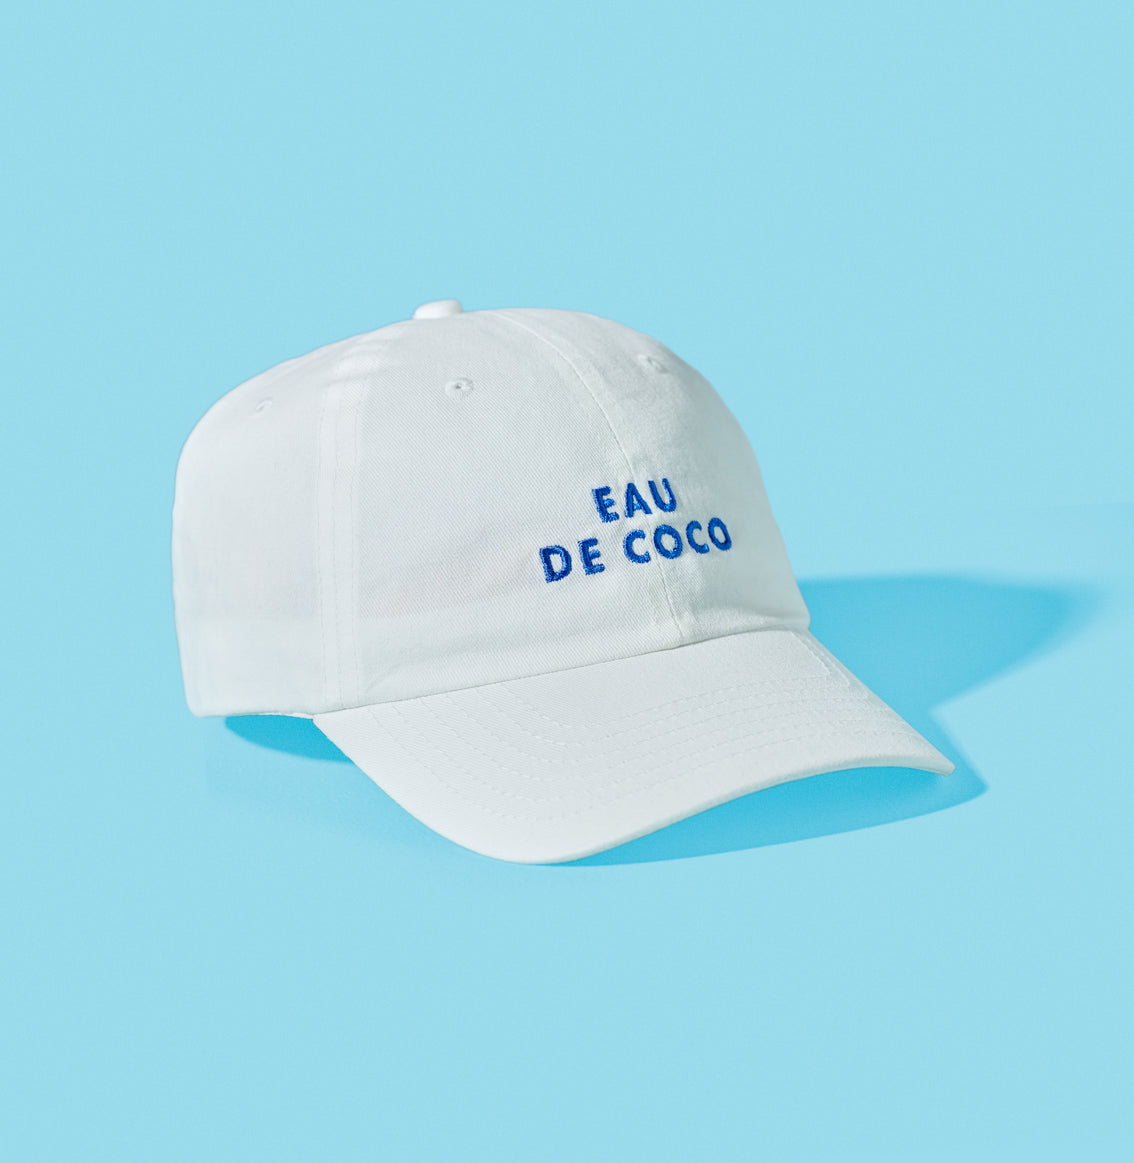 A Vita Coco Eau De Coco baseball cap.